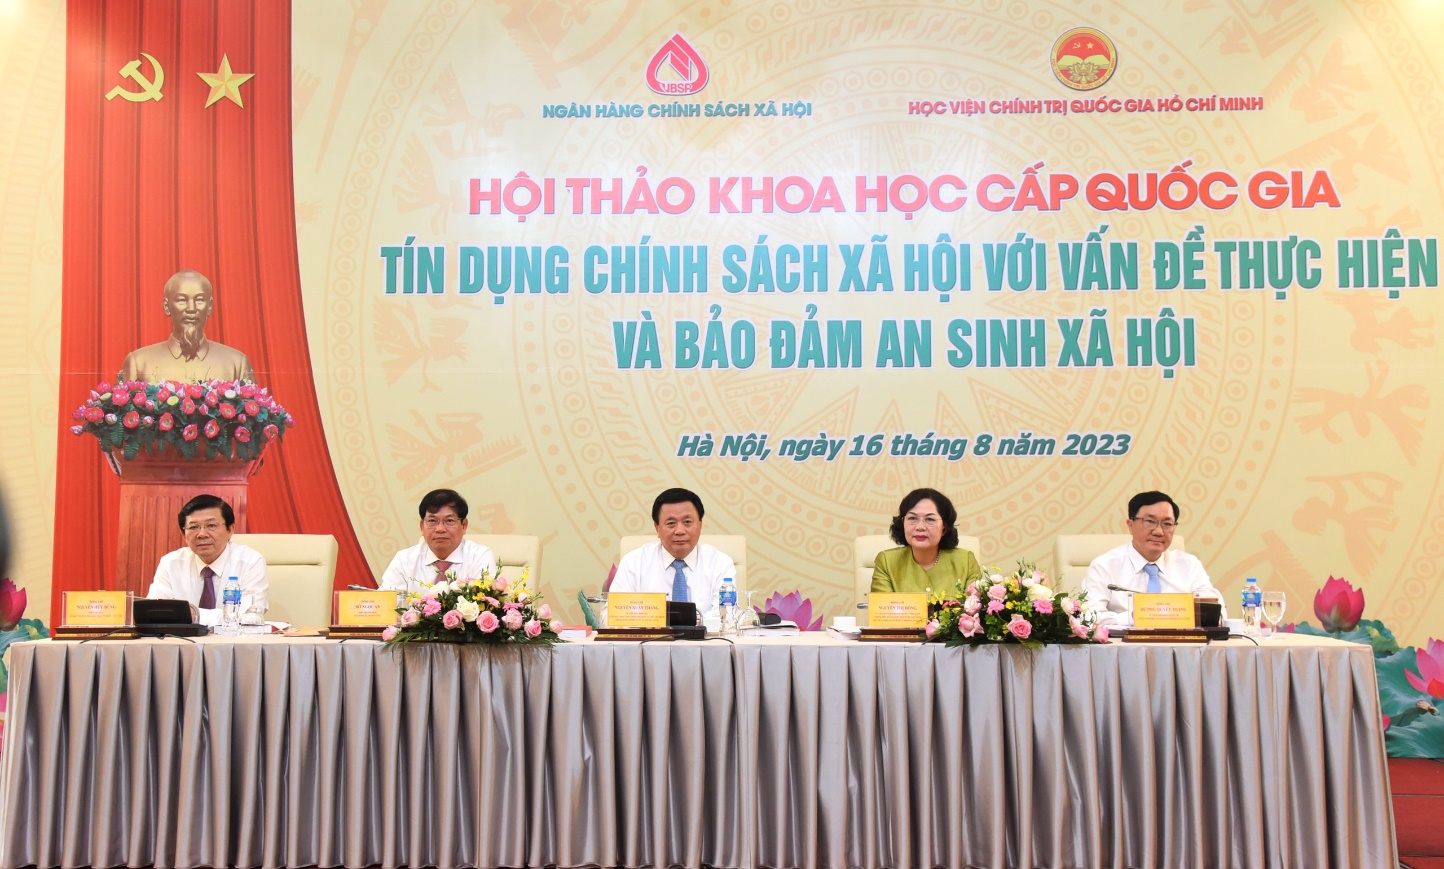 Hội LHPN tỉnh Quảng Trị tiếp tục triển khai các hoạt động an sinh xã hội  tại vùng dân tộc thiểu số  Cổng Thông Tin Hội Liên hiệp Phụ nữ Việt